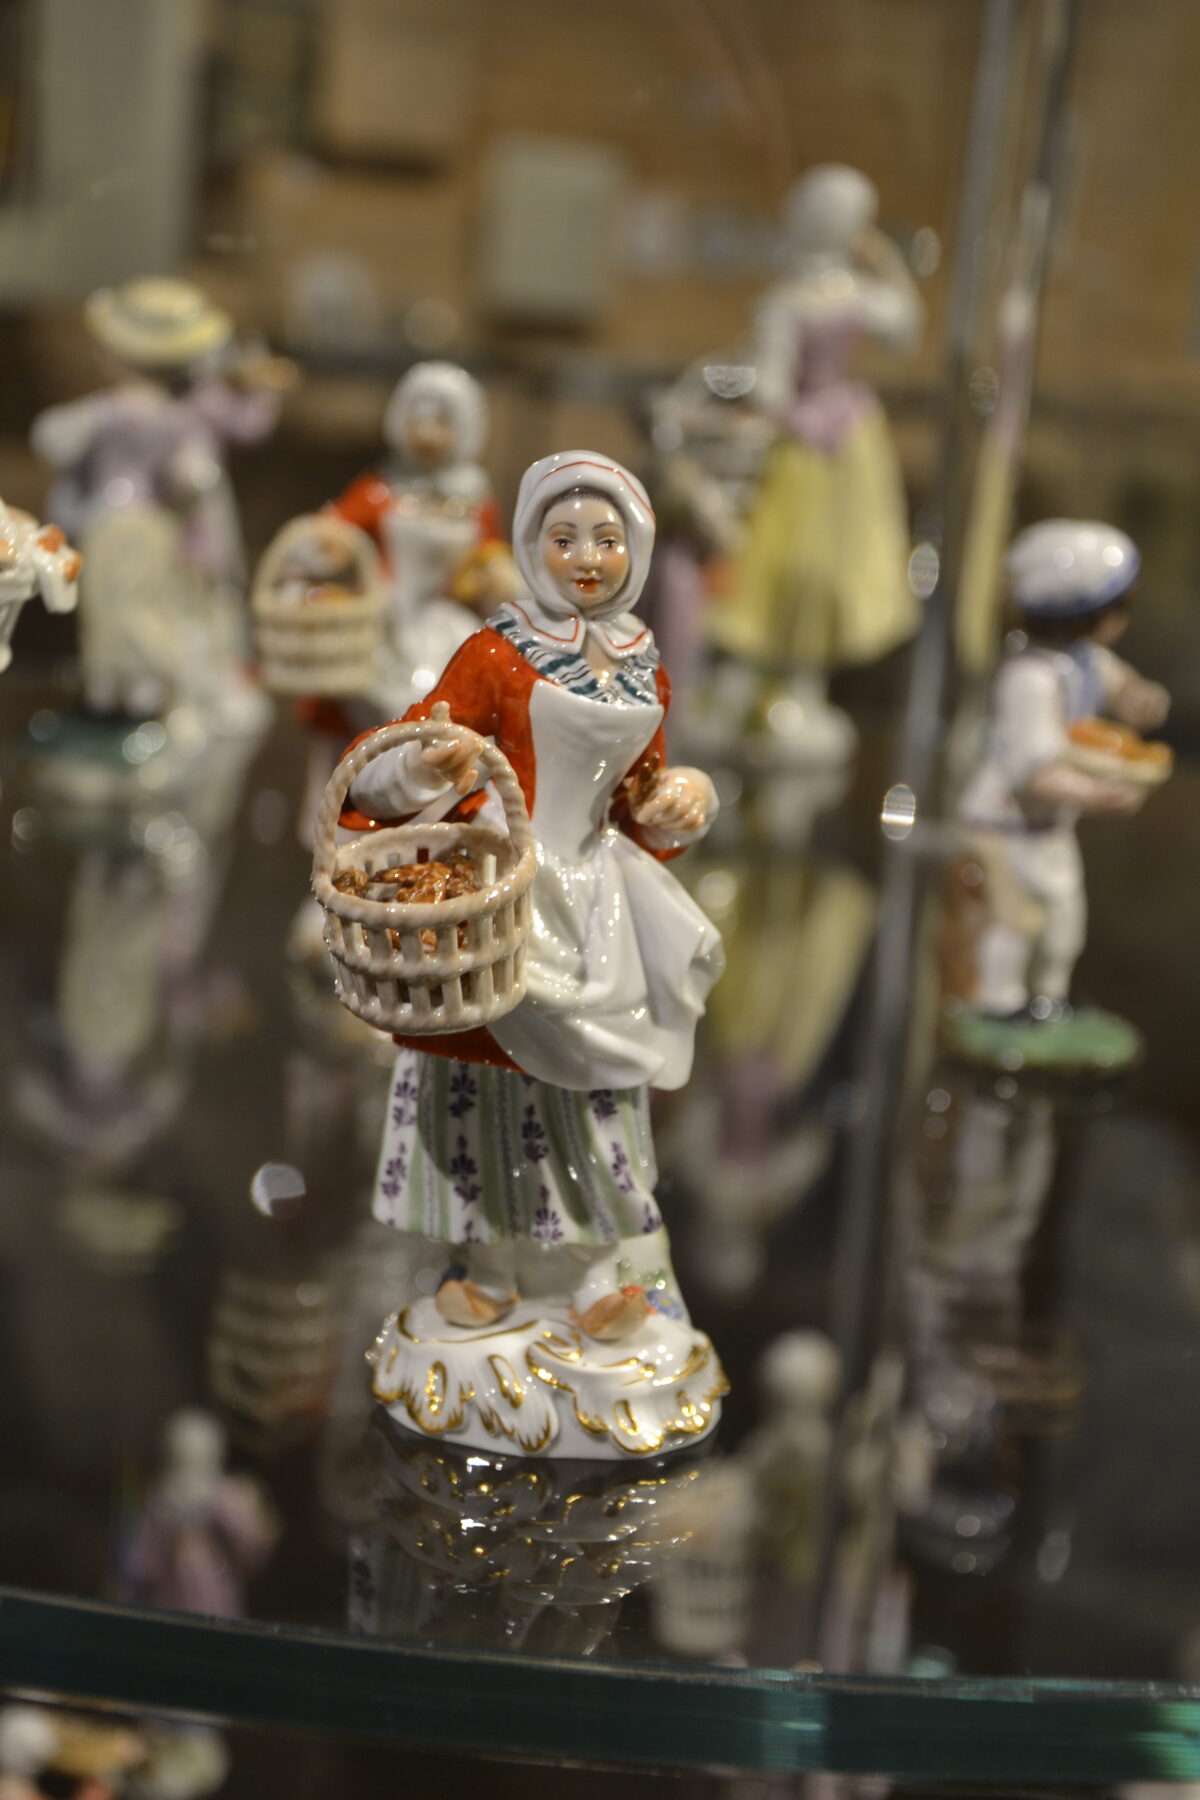 Mießner Porzellan Figur: Frau mit Korb, darin liegen Kornspitze